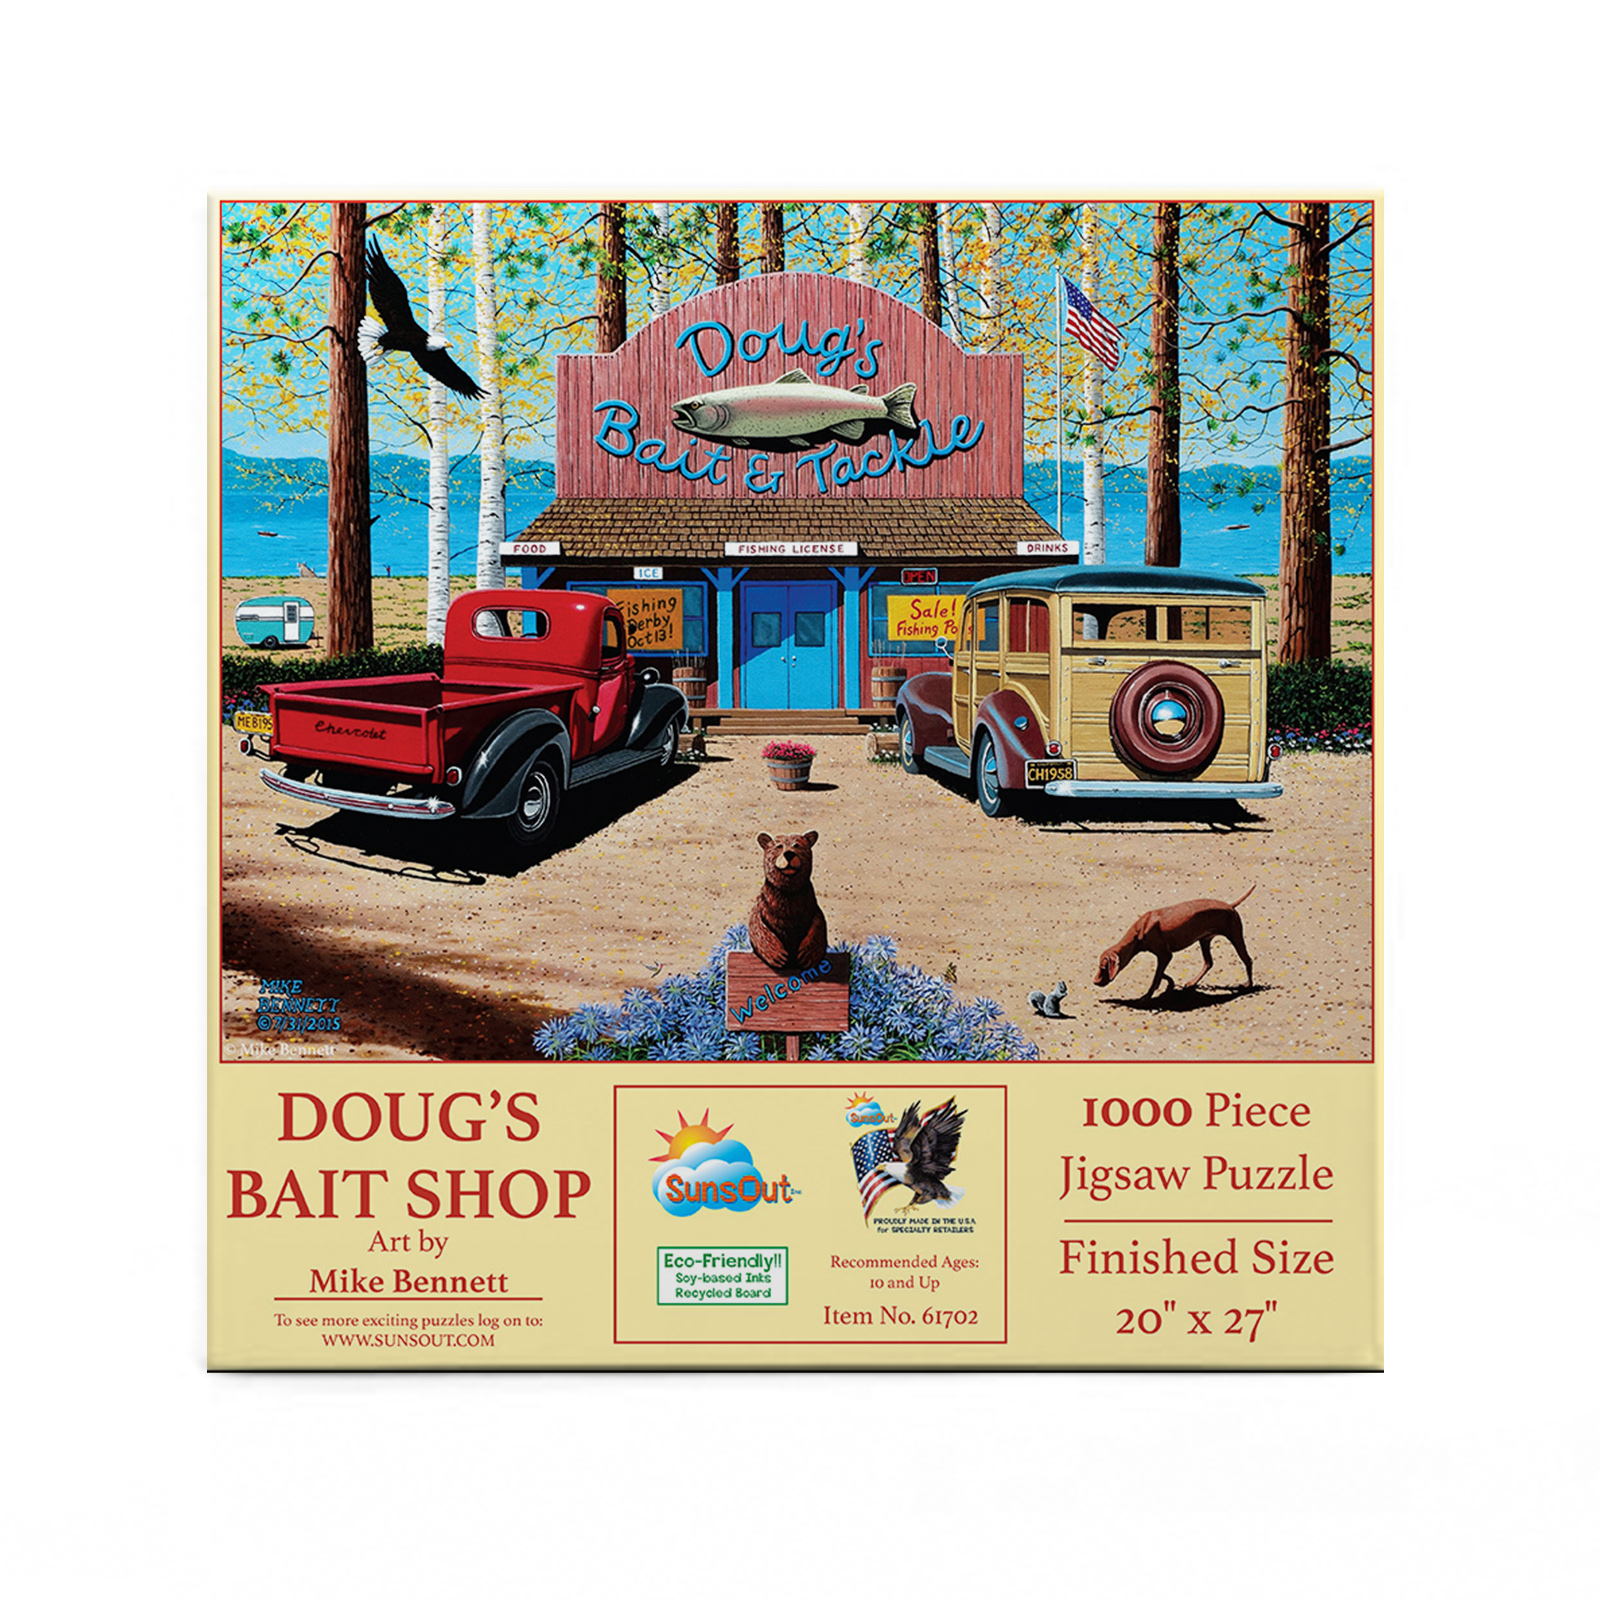 Doug's Bait Shop